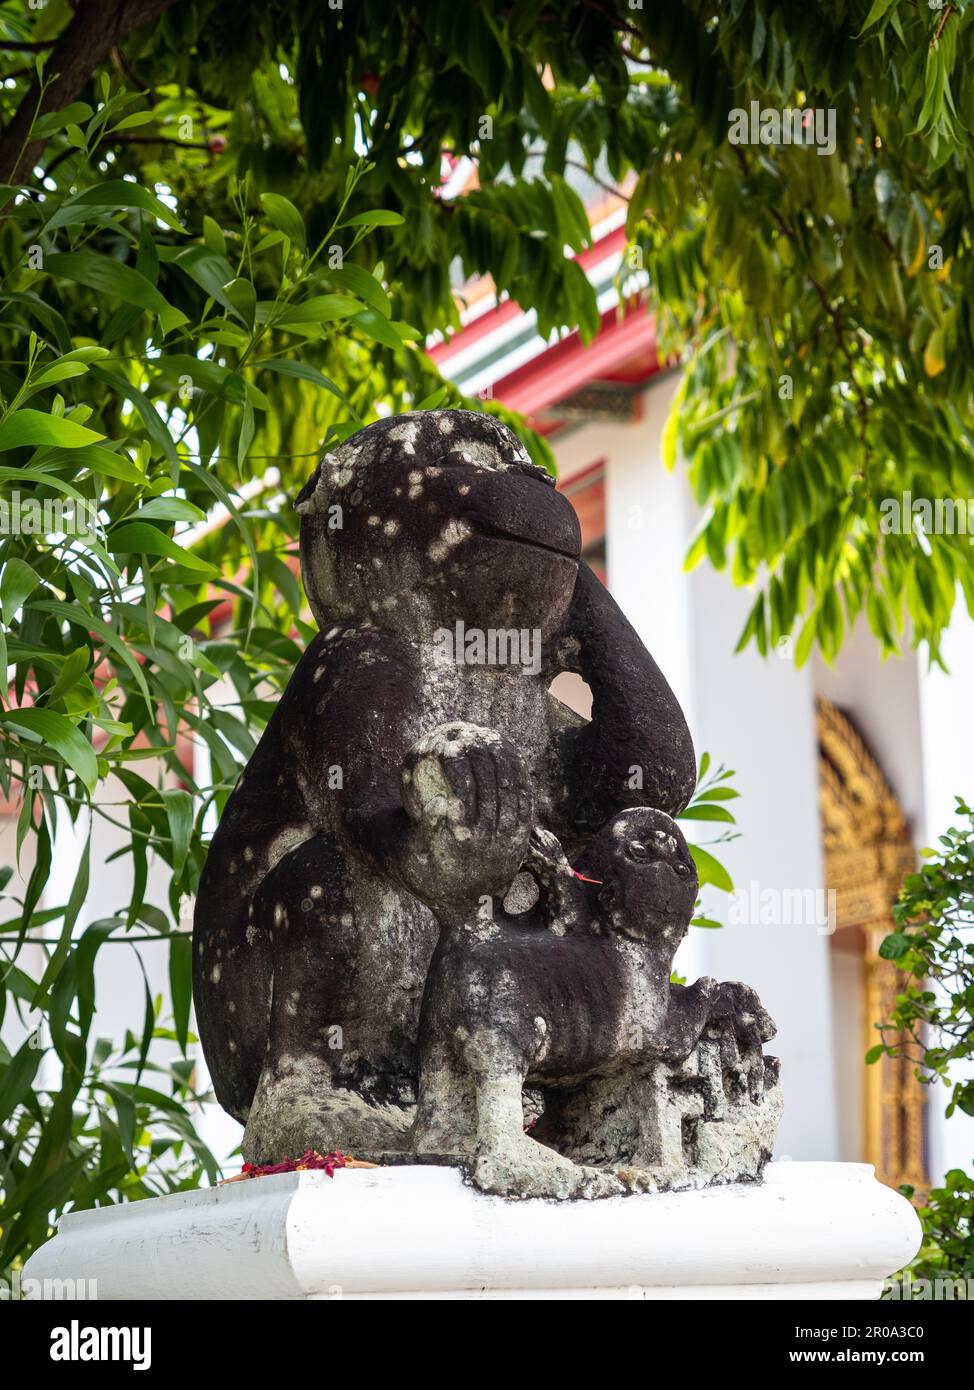 Une statue de singe gaie sourit parmi la verdure en face du temple Wat Pho, un monument culturel bouddhiste à Bangkok, en Thaïlande. Banque D'Images